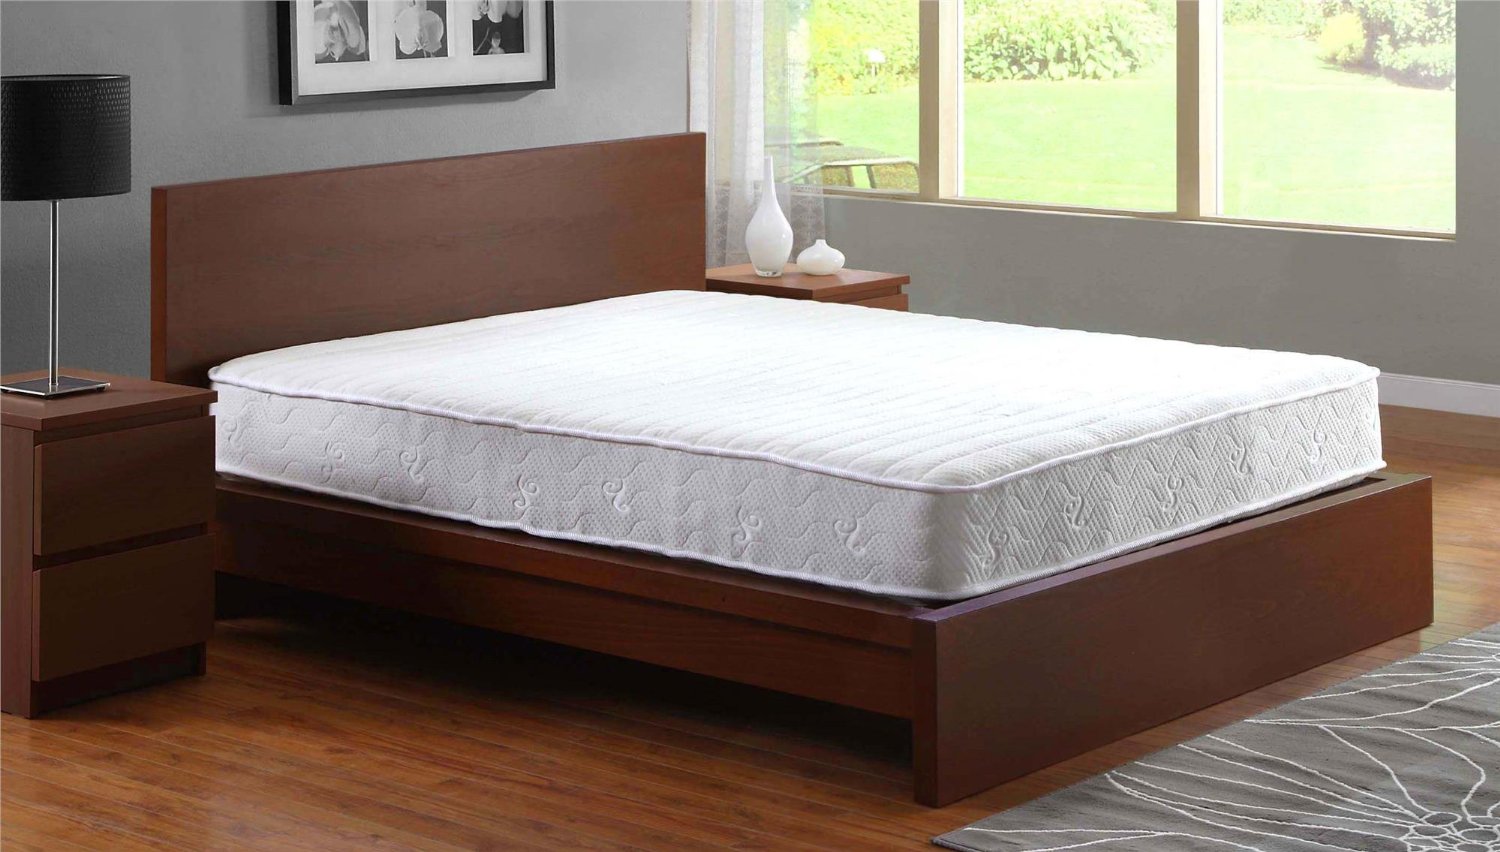 signature sleep contour 8 inch mattress queen